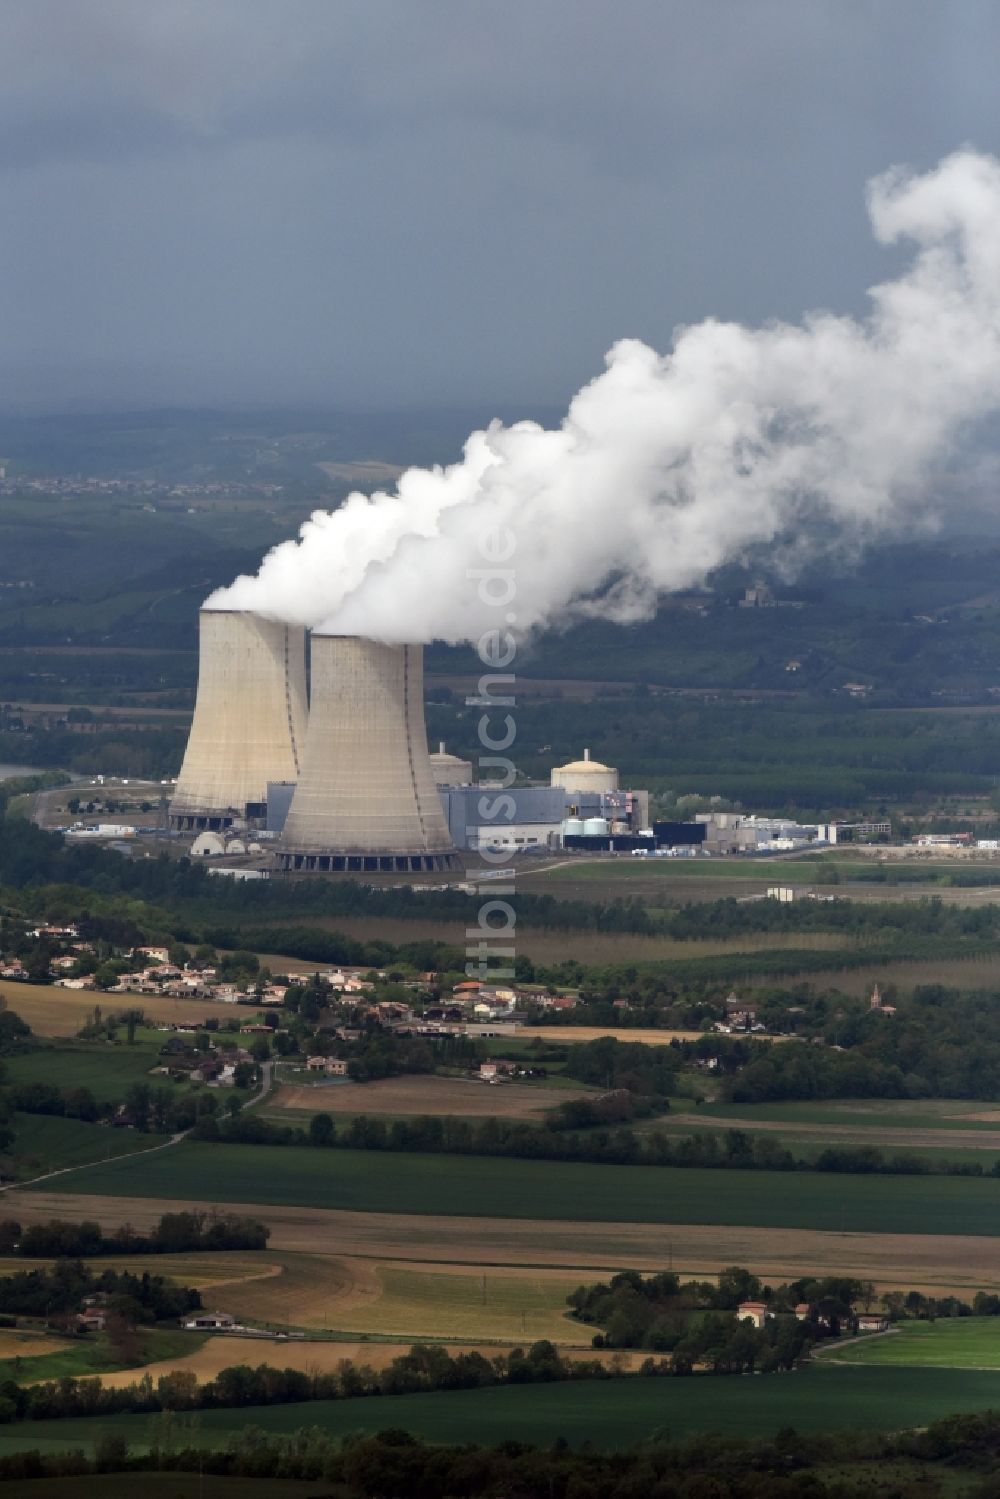 Golfech aus der Vogelperspektive: Reaktorblöcke und Anlagen des AKW - KKW Kernkraftwerk in Golfech in Languedoc-Roussillon Midi-Pyrenees, Frankreich